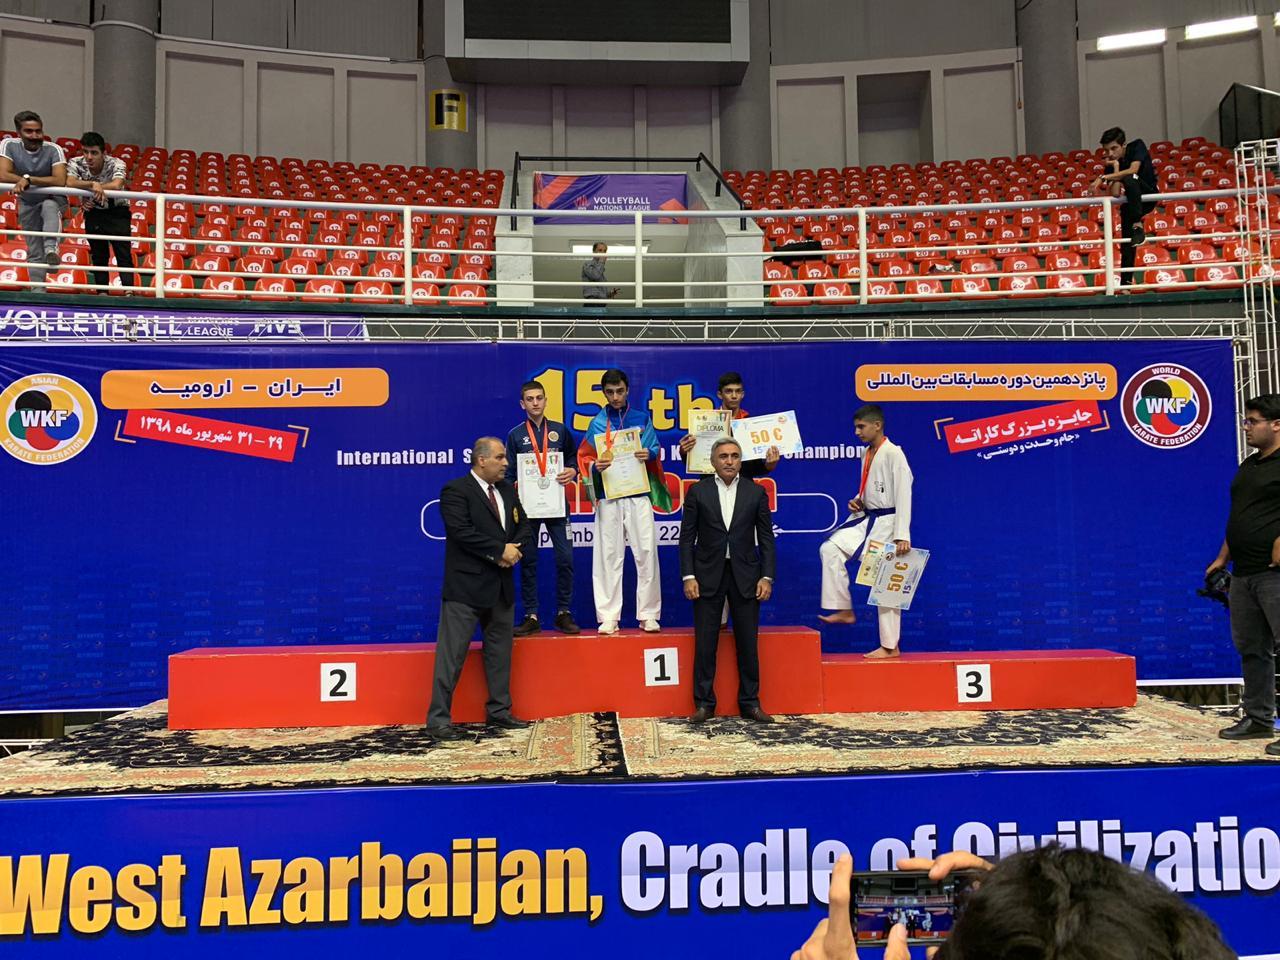 Azərbaycan karateçisi ermənini məğlub edib qızıl medal qazandı